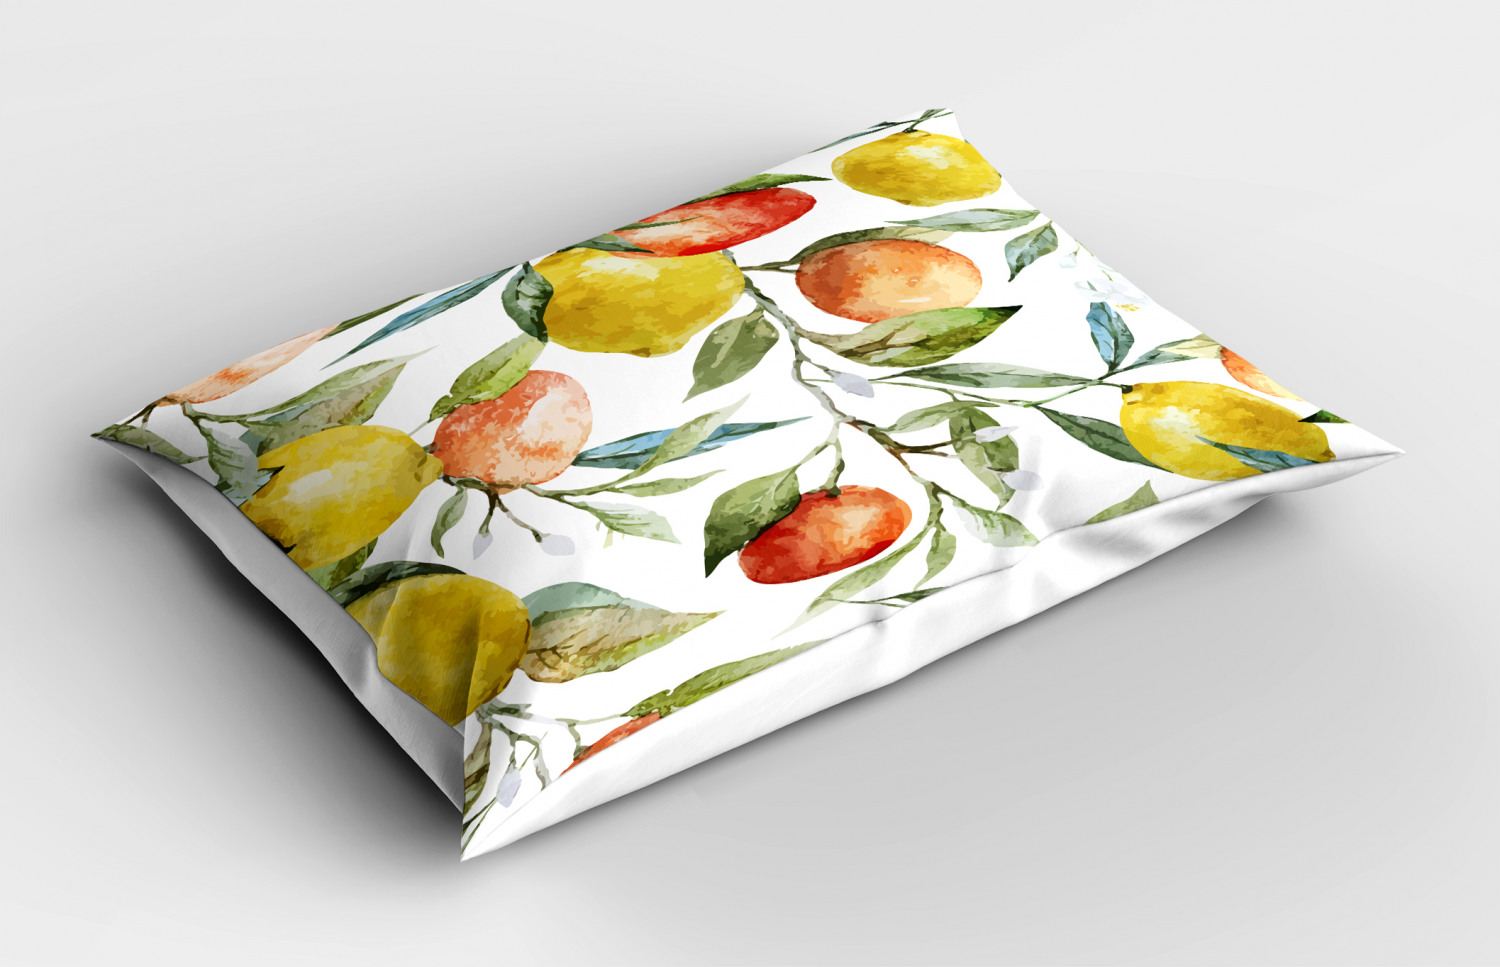 Details about   Lemons Pillow Sham Decorative Pillowcase 3 Sizes for Bedroom Decor 